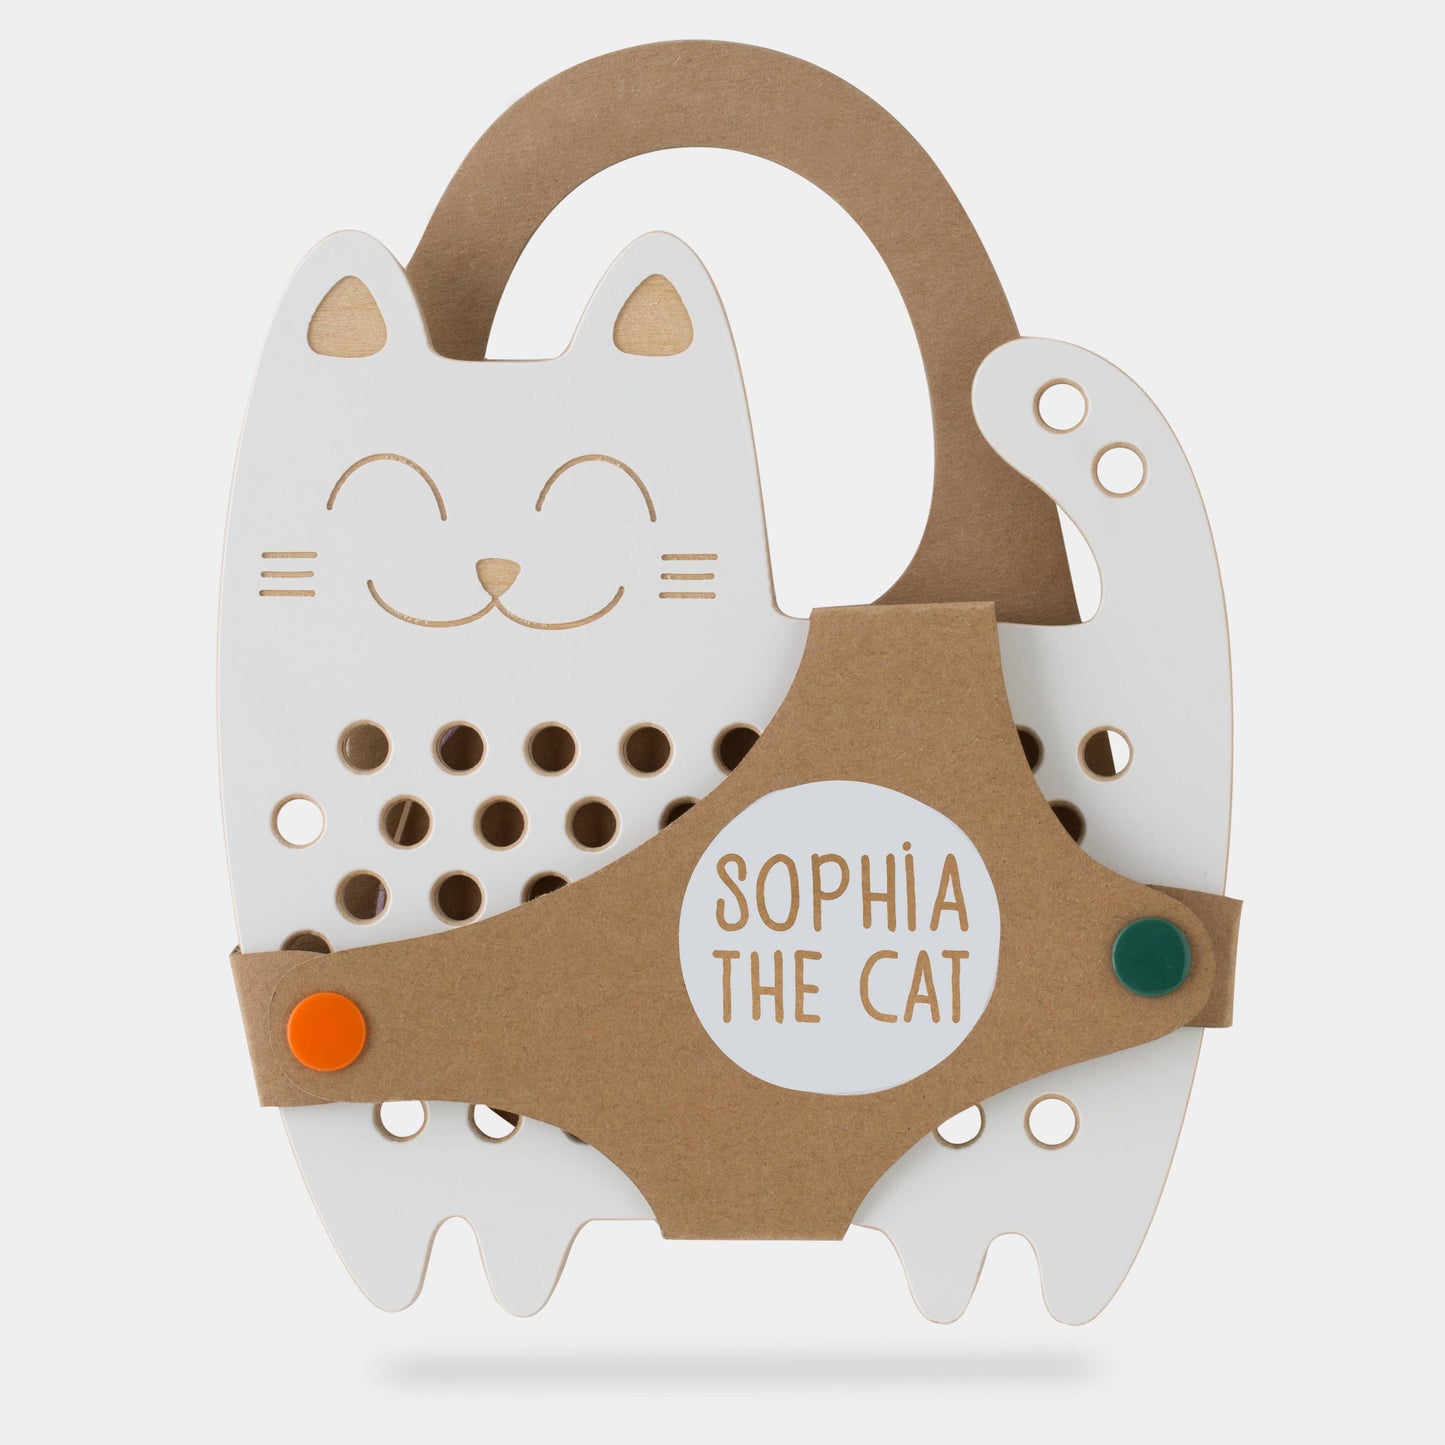 Sophia the Cat, juguete de madera con cordones, montessori